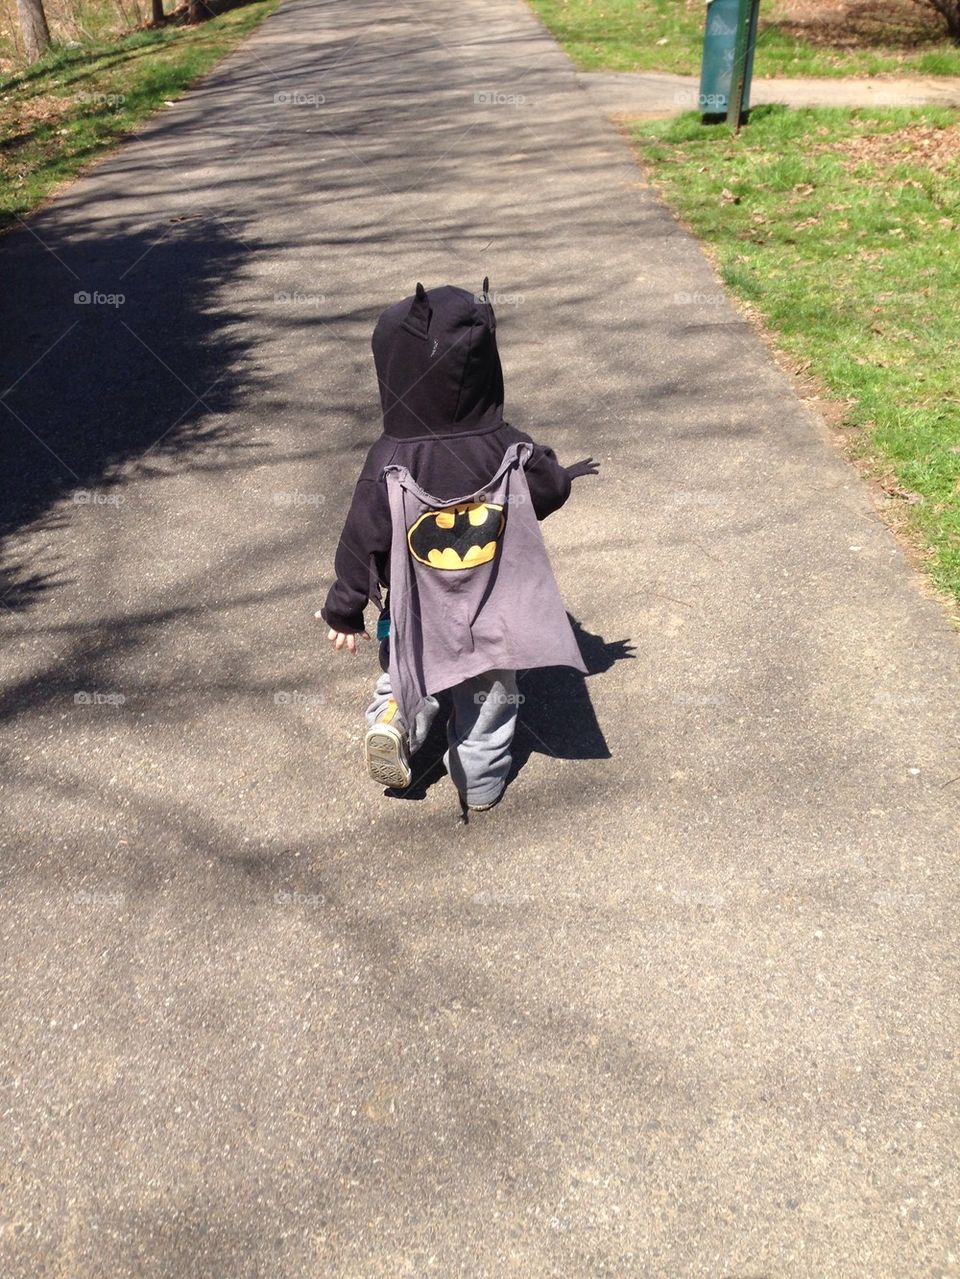 Run batman run